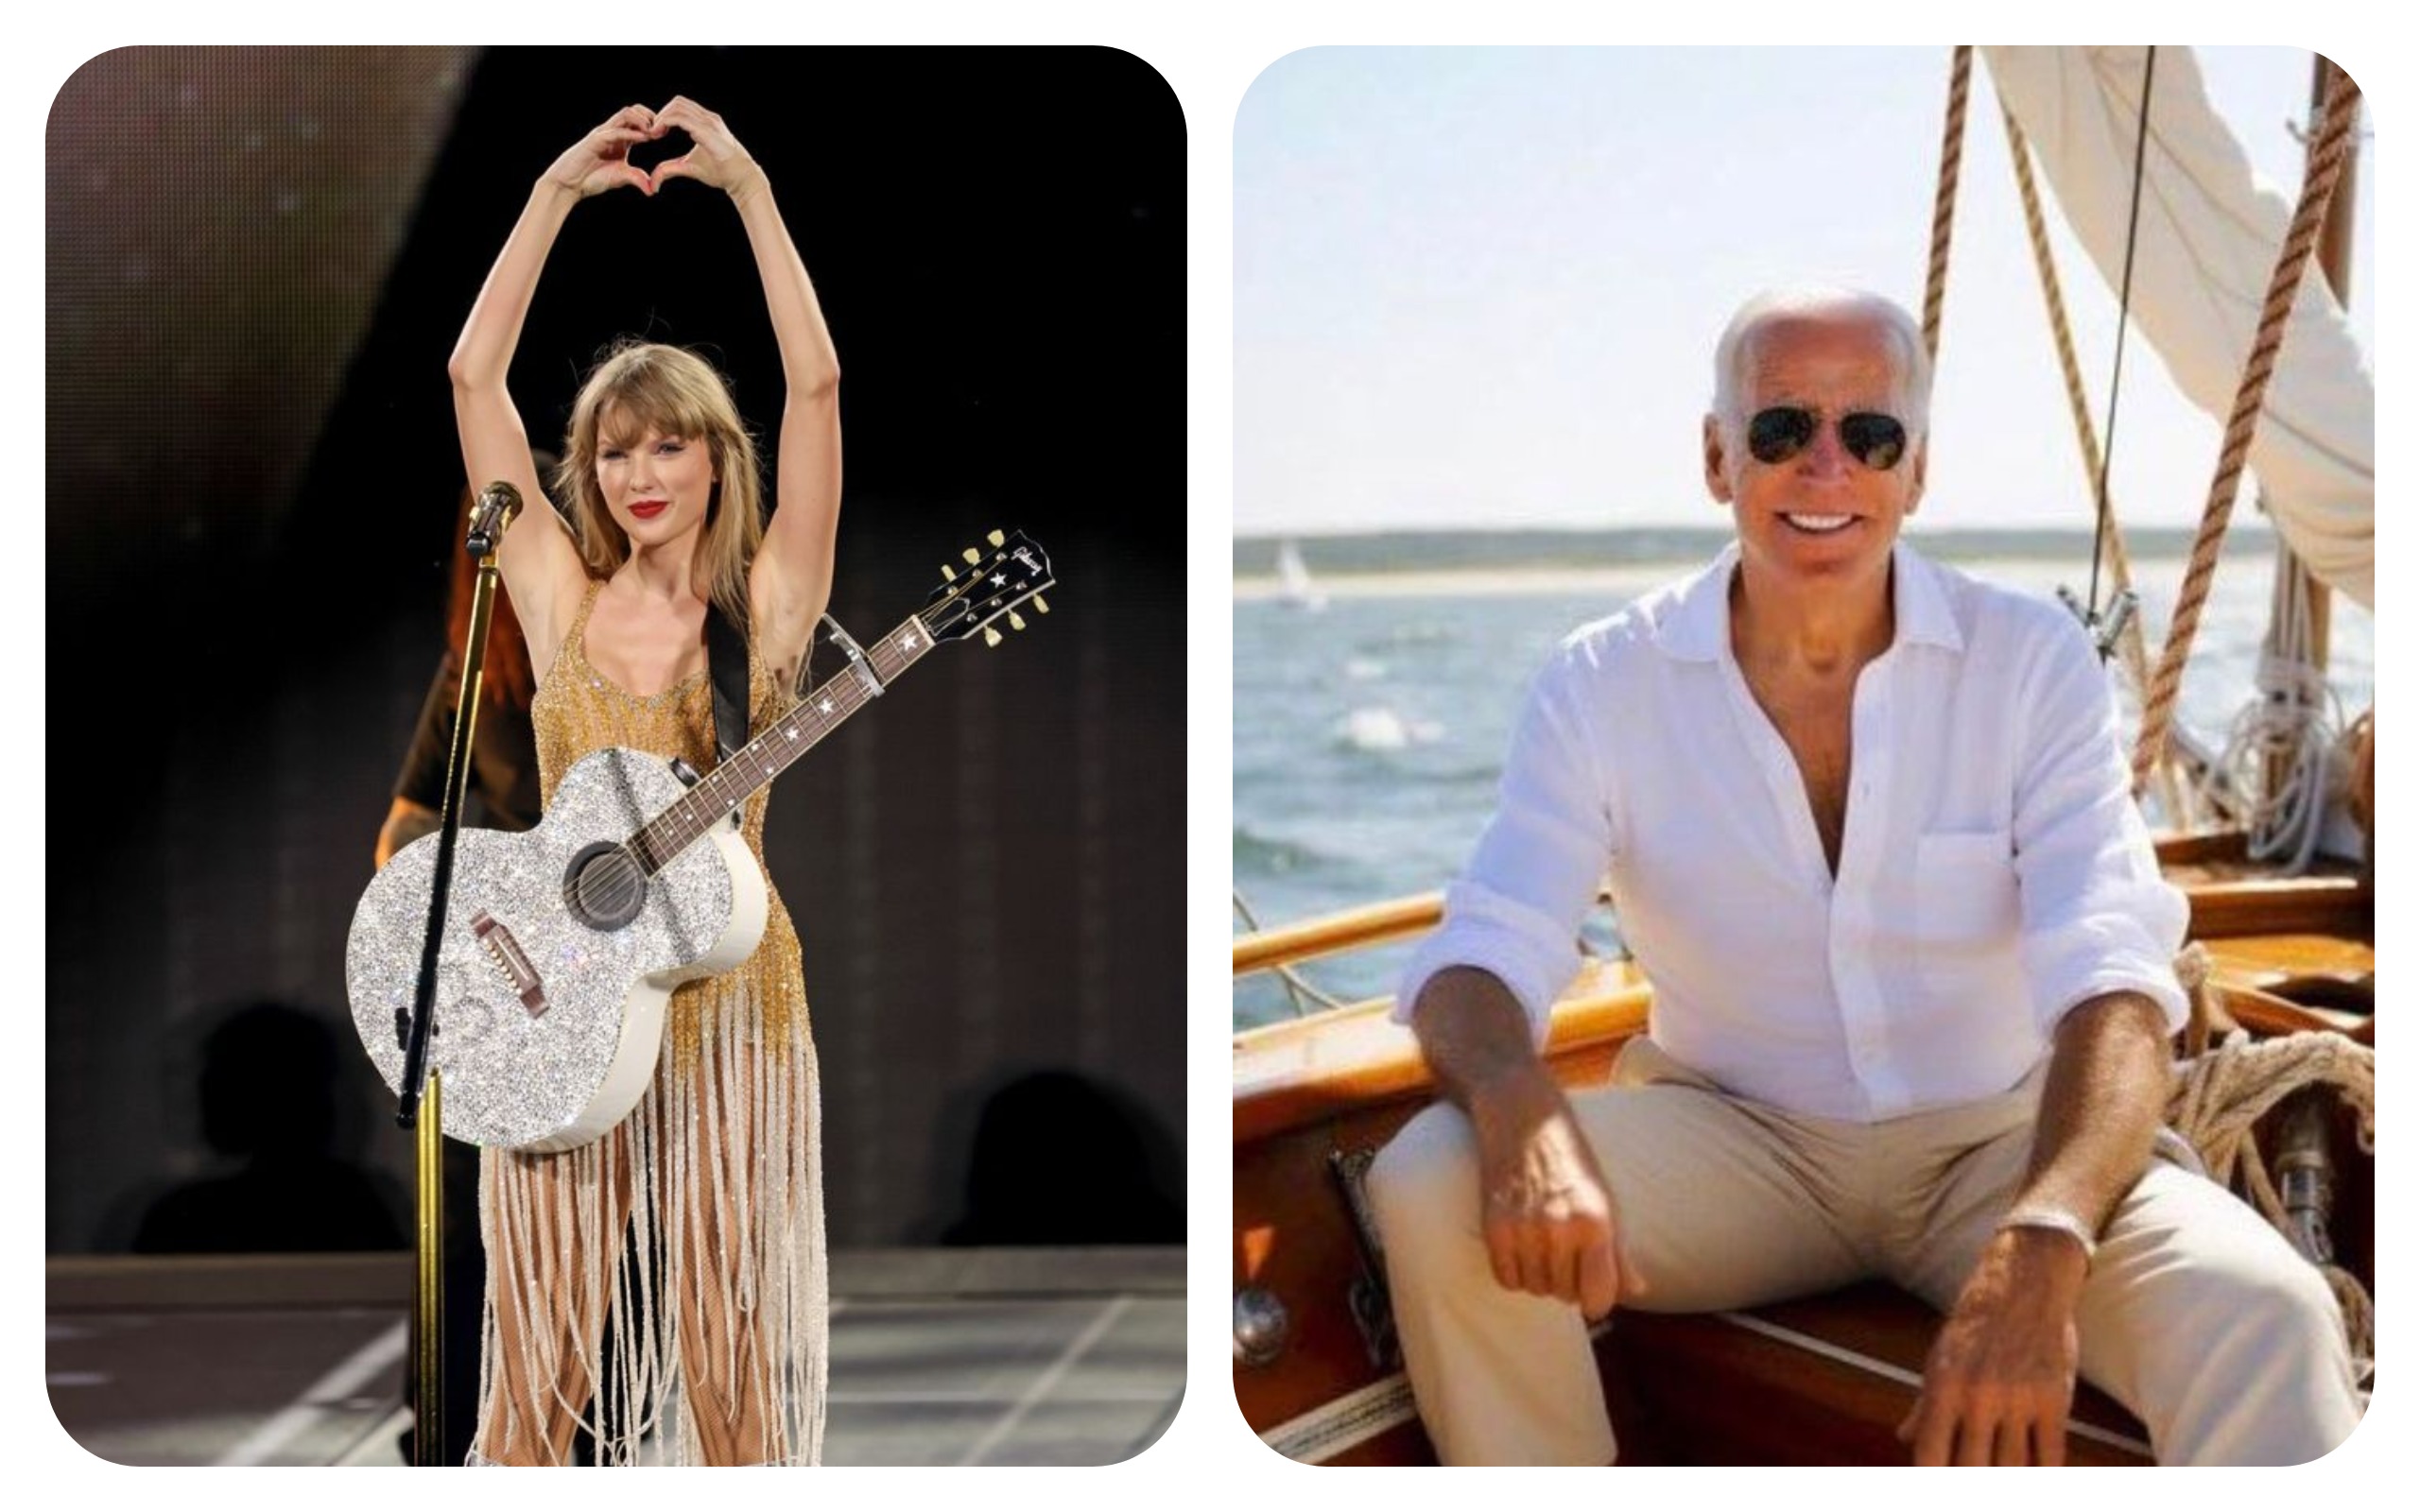 Joe Biden Is Attempting To Get On Taylor Swift